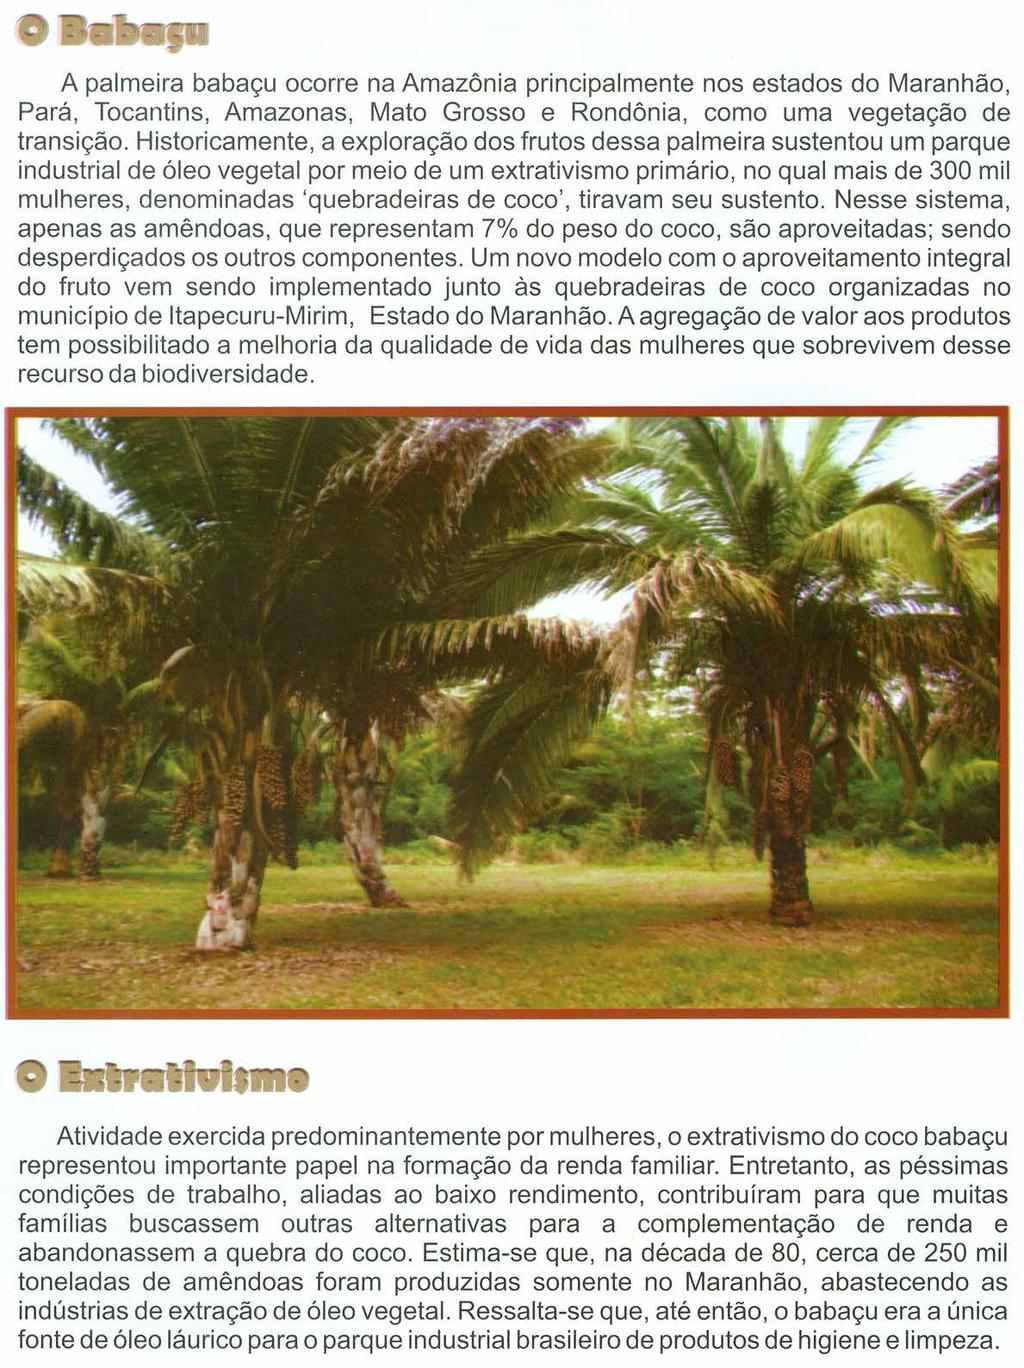 A palmeira babaçu ocorre na Amazônia principalmente nos estados do Maranhão, Pará, Tocantins, Amazonas, Mato Grosso e Rondônia, como uma vegetação de transição.